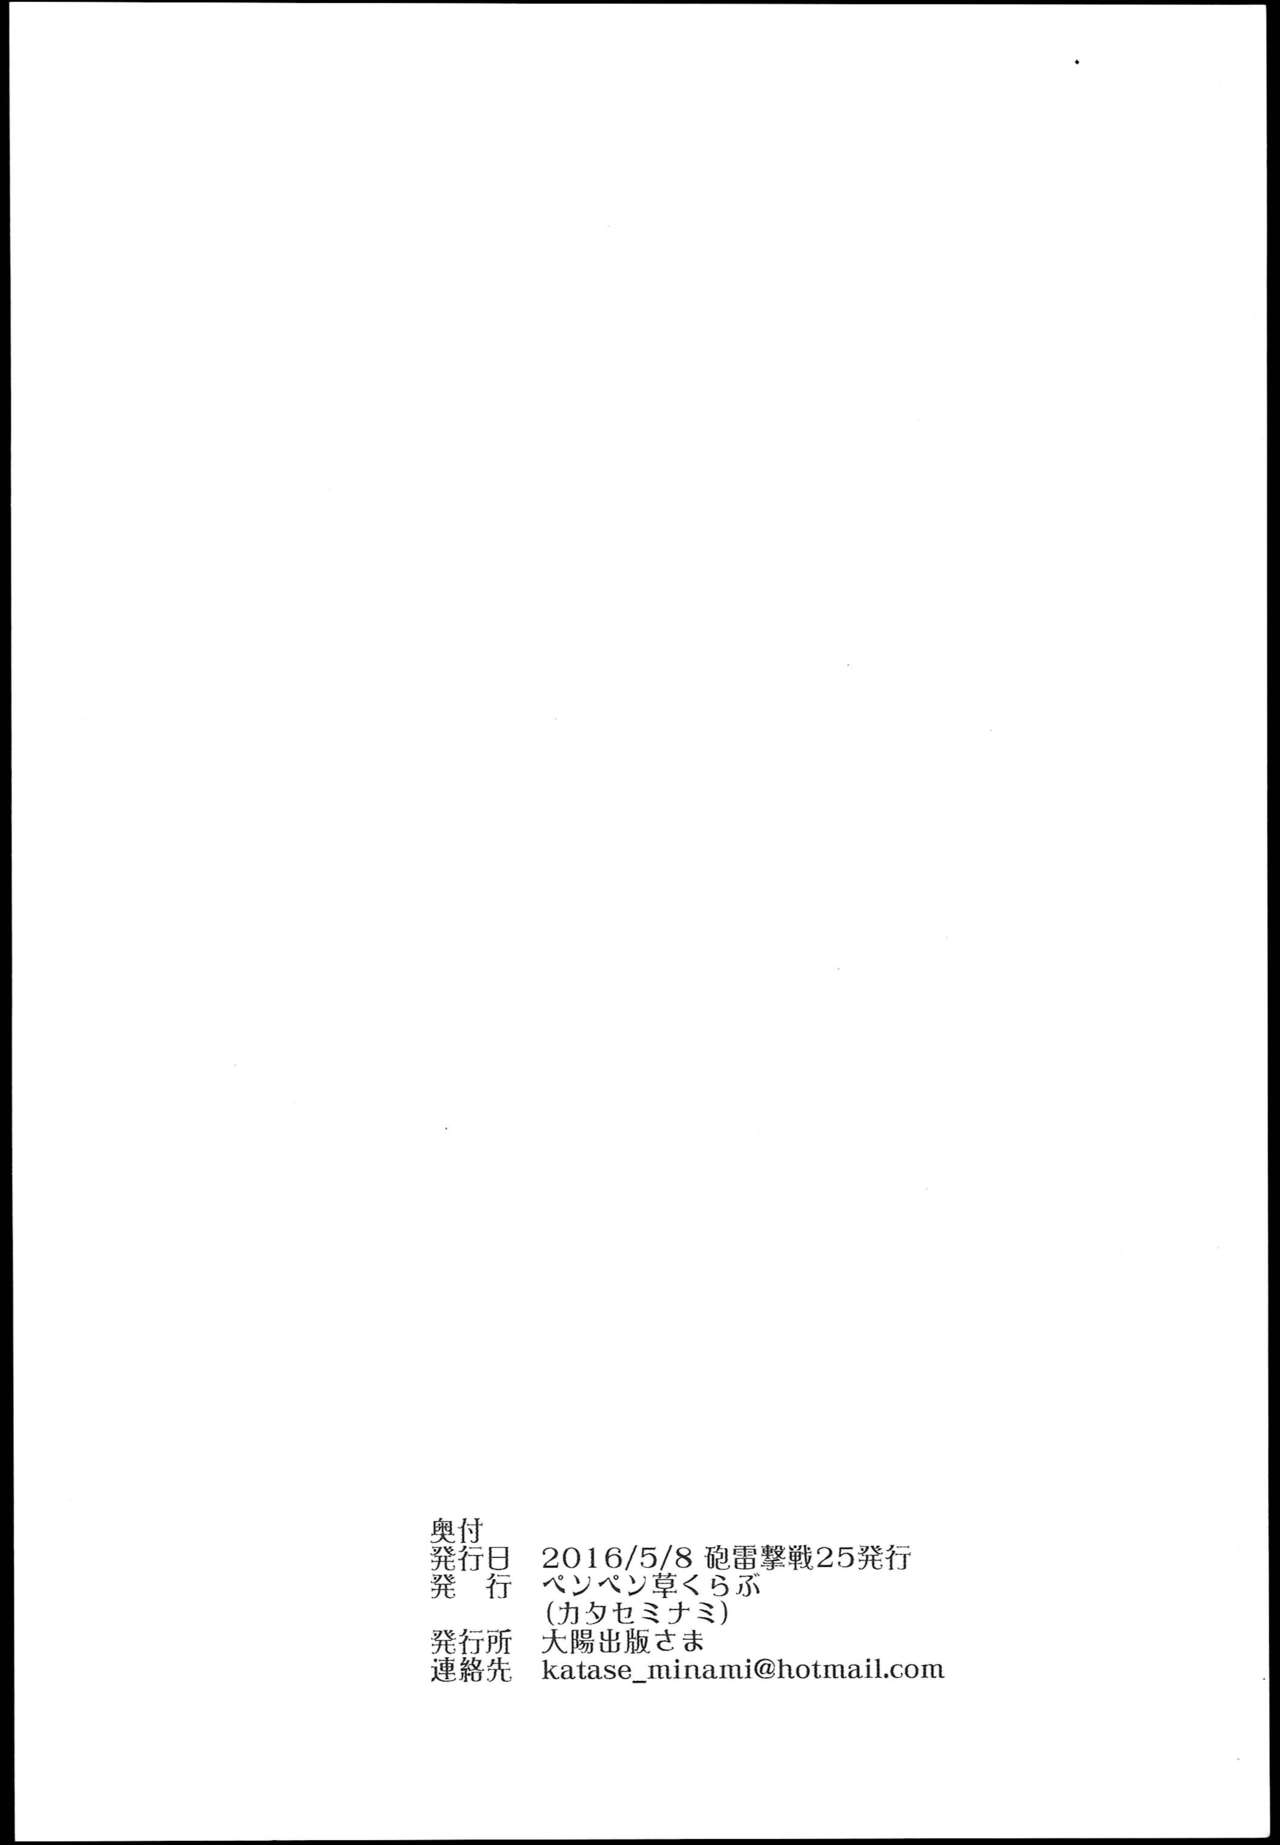 (砲雷撃戦! よーい! 25戦目) [ペンペン草くらぶ (カタセミナミ)] 神通艶情 (艦隊これくしょん -艦これ-)